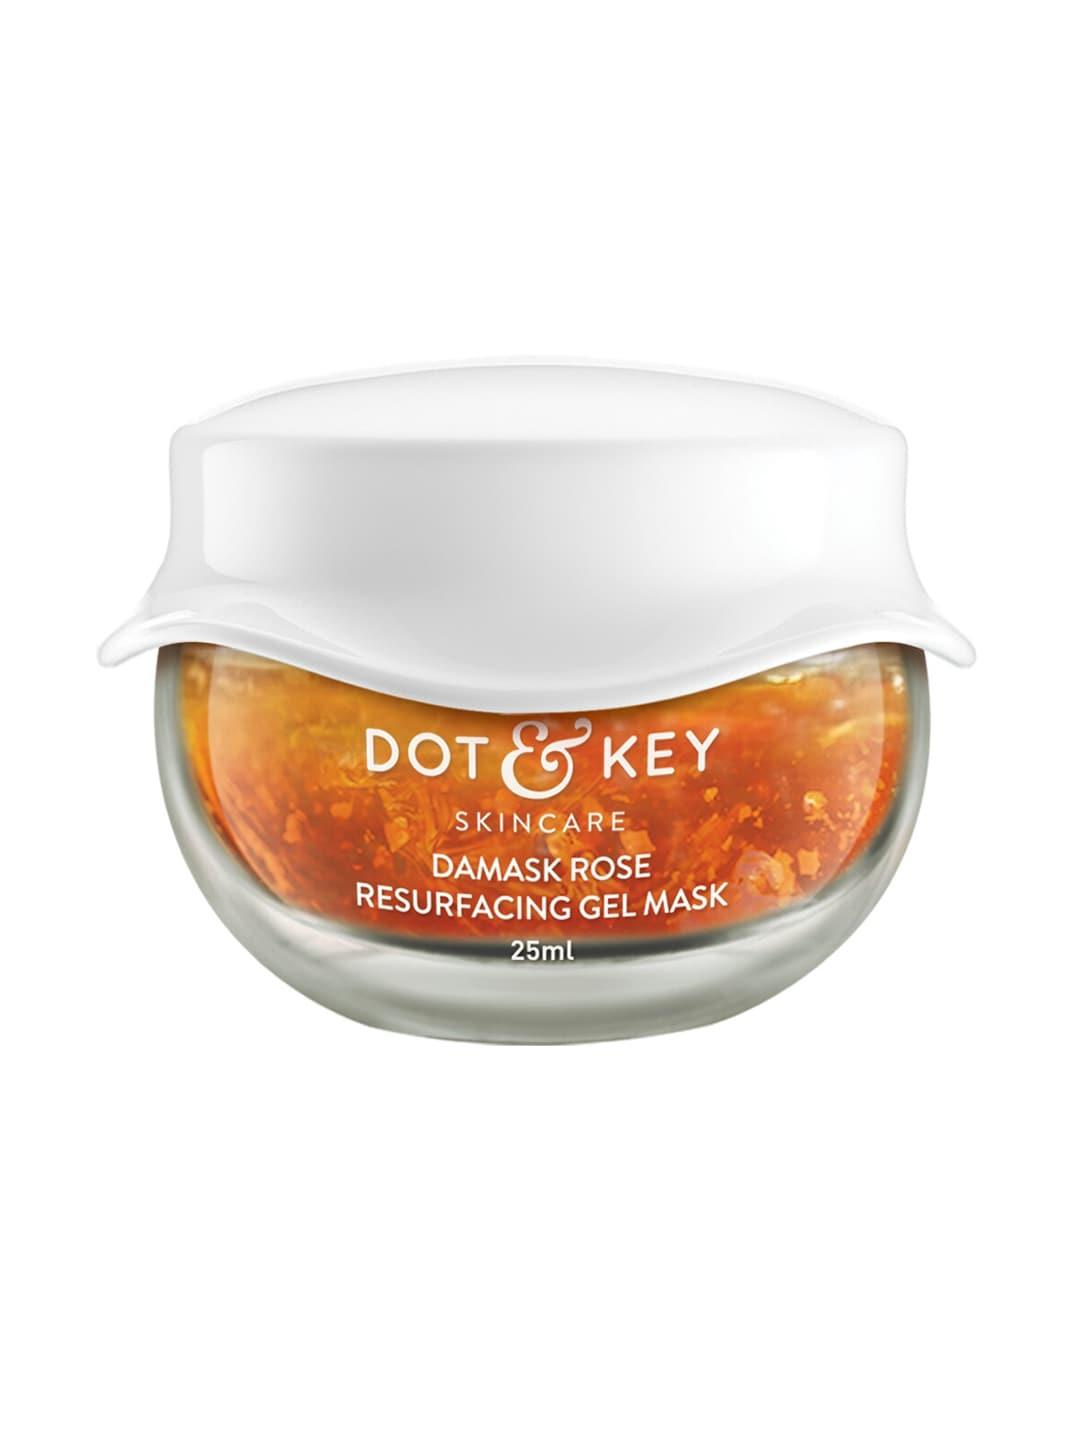 dot & key damask rose resurfacing gel mask 25ml